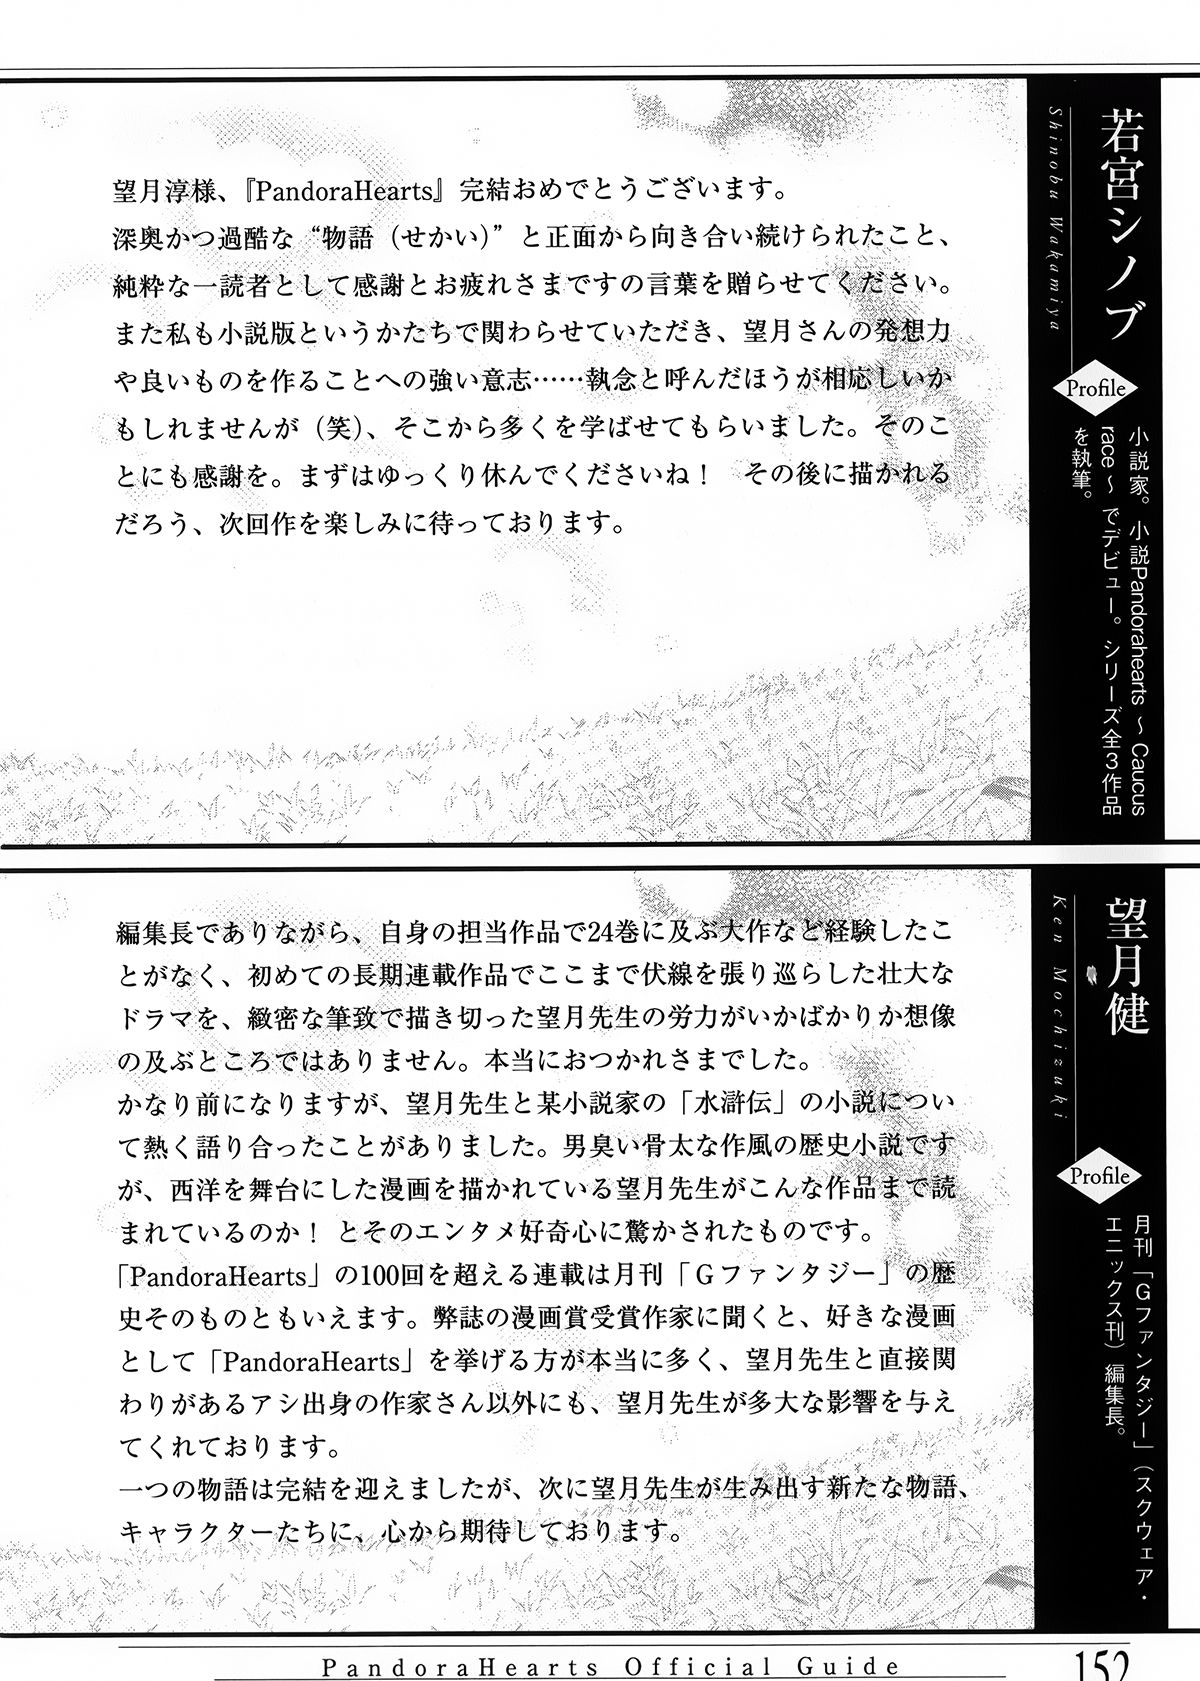 Pandora Hearts Guidebook 24+1: Last Dance パンドラハーツ オフィシャルガイド 24 + 1 ~Last Dance! 156